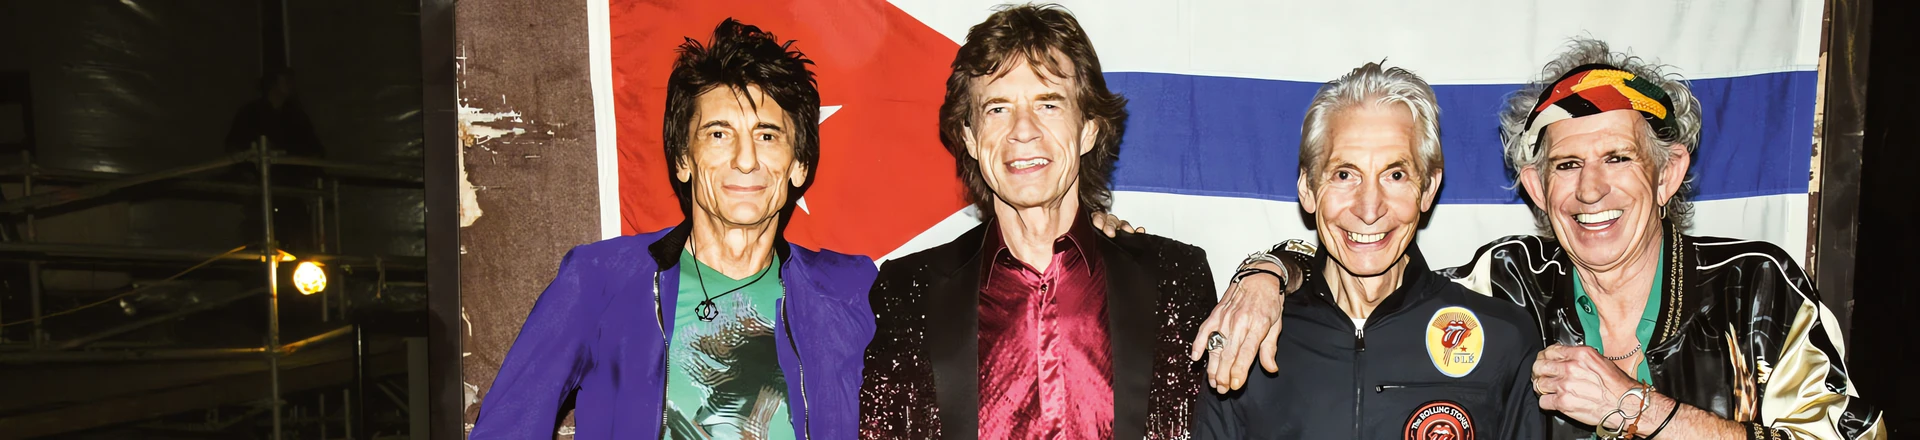 The Rolling Stones z serią koncertów "Extra Licks" na YouTube